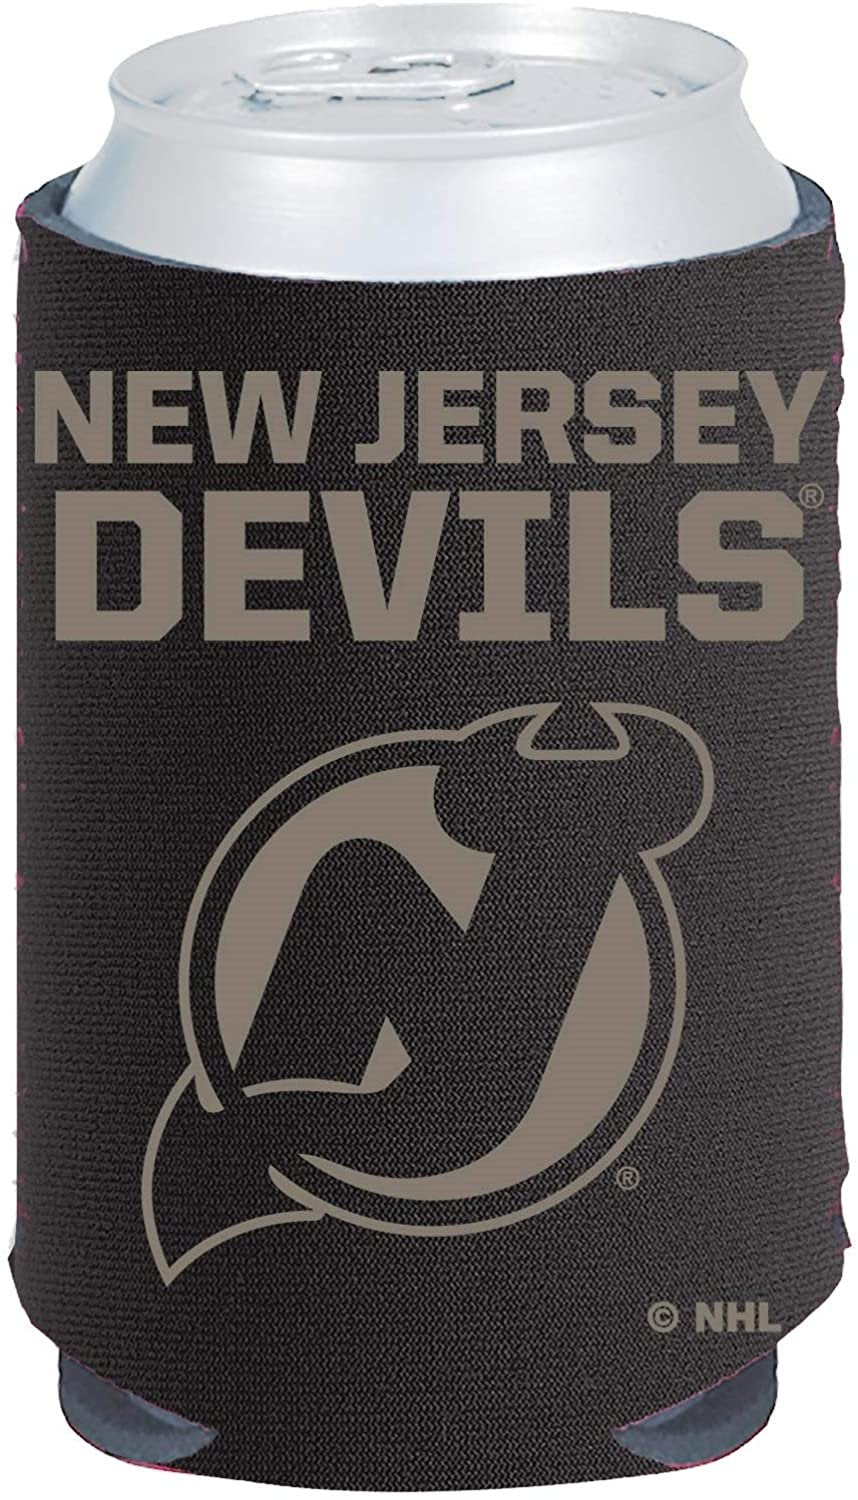 New Jersey Devils 2-Pack CAN Tonal Design Beverage Insulator Neoprene Holder